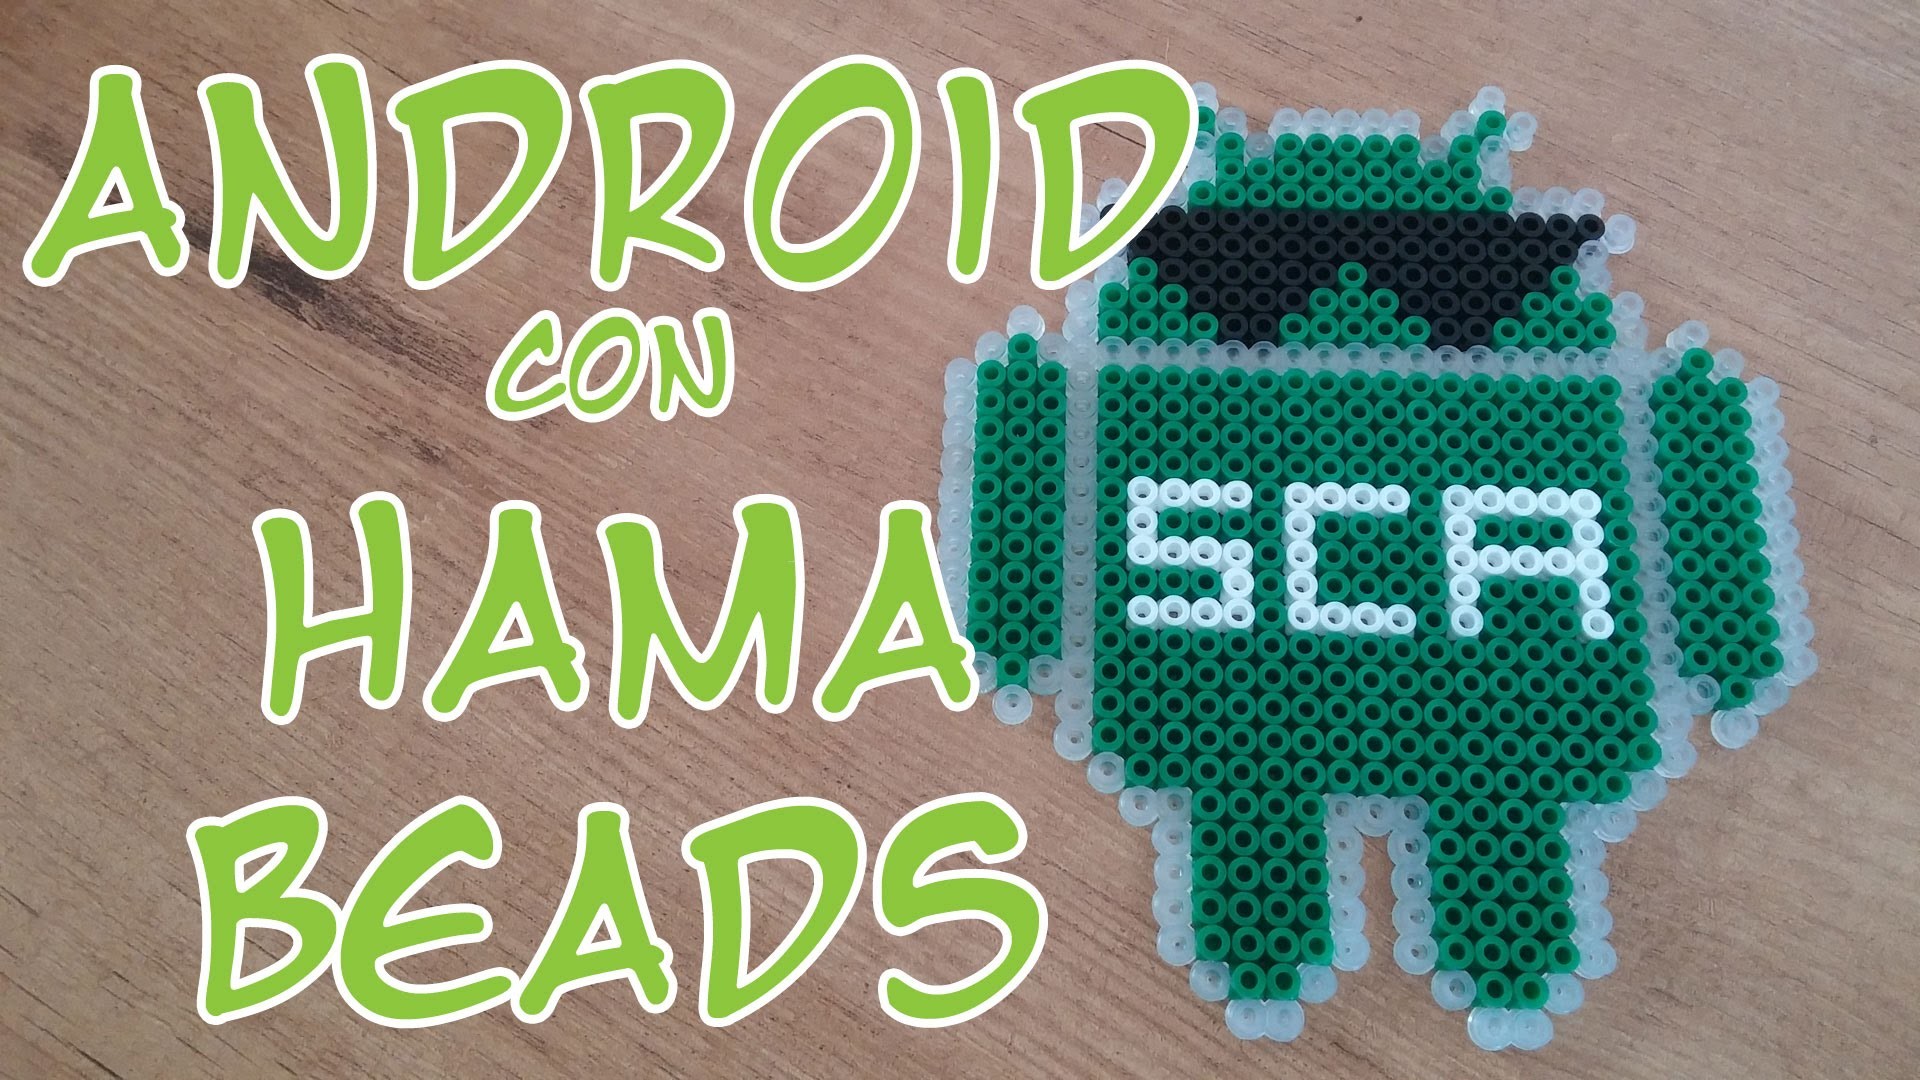 Robot de Android con Hama Beads